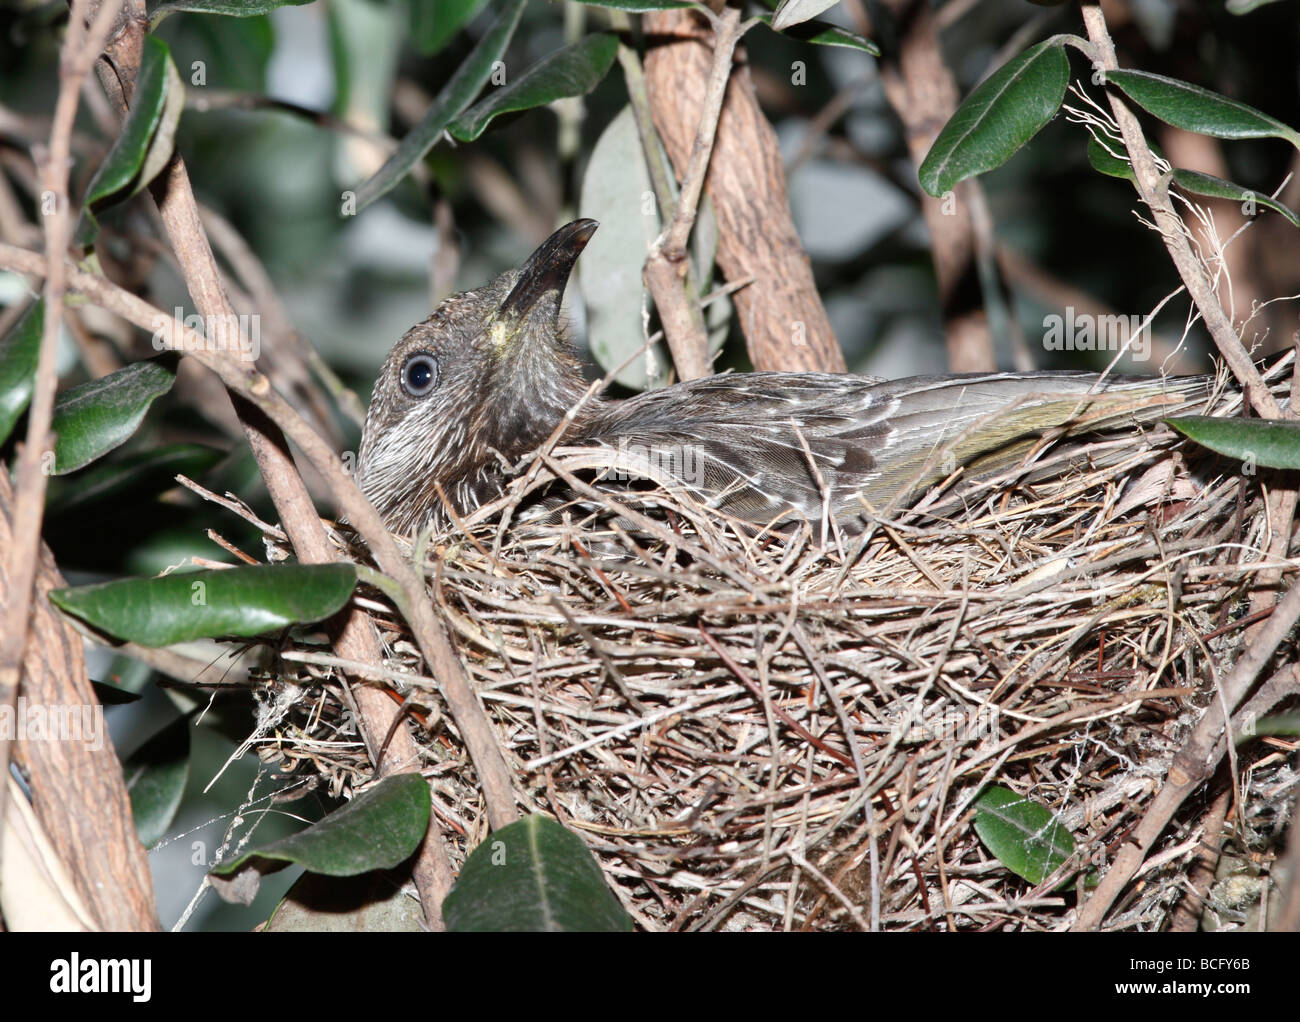 Anthochaera chrysoptera Little wattlebird,, assis sur le nid Banque D'Images